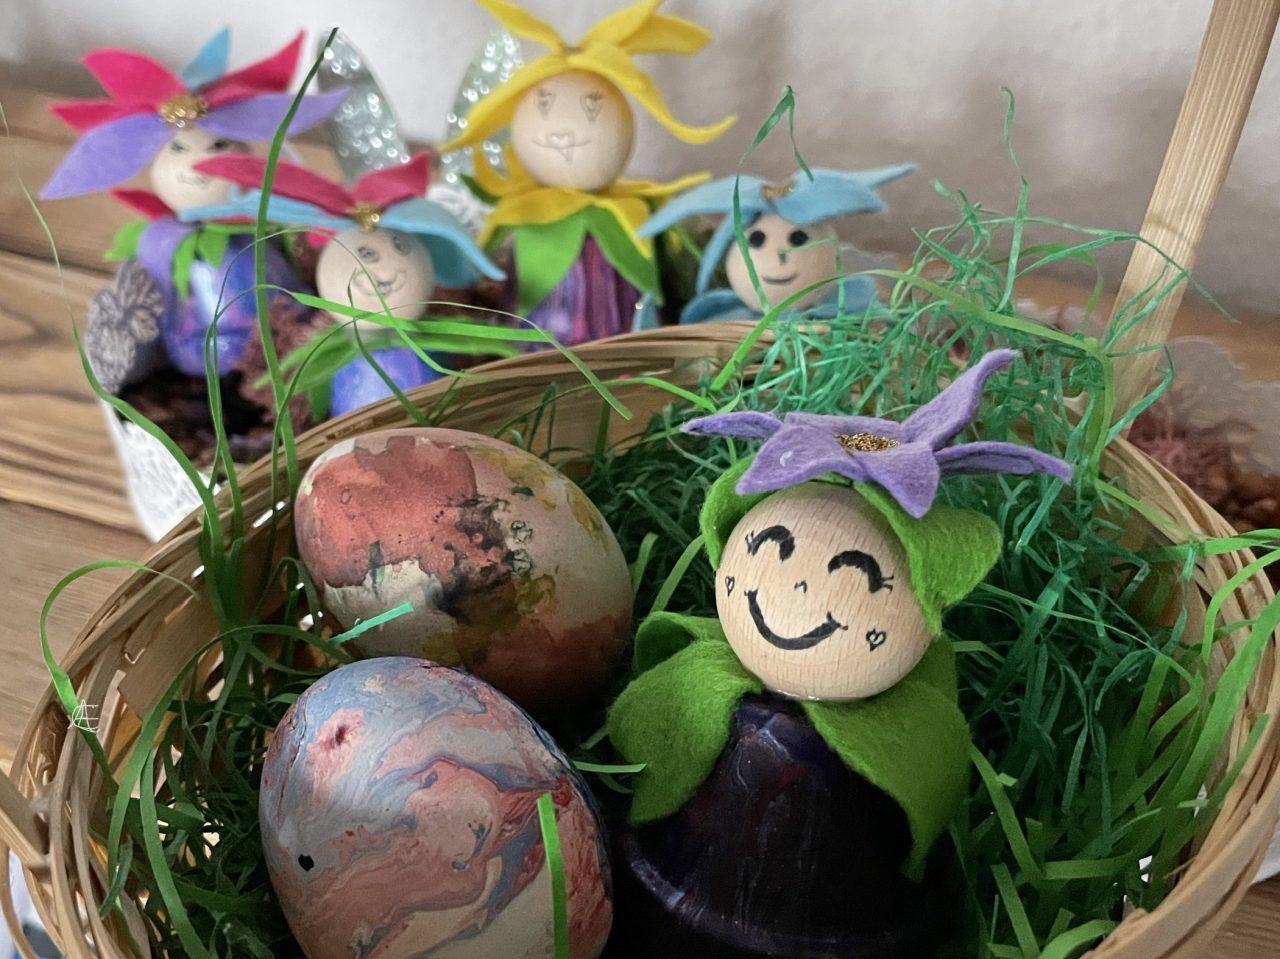 Blümling (Bastelei aus Tontöpfchen, welche an eine Blume erinnert) in einem Körbchen mit Ostergrün und zwei Eiern. Im Hintergrund stehen weitere Blümlinge. 